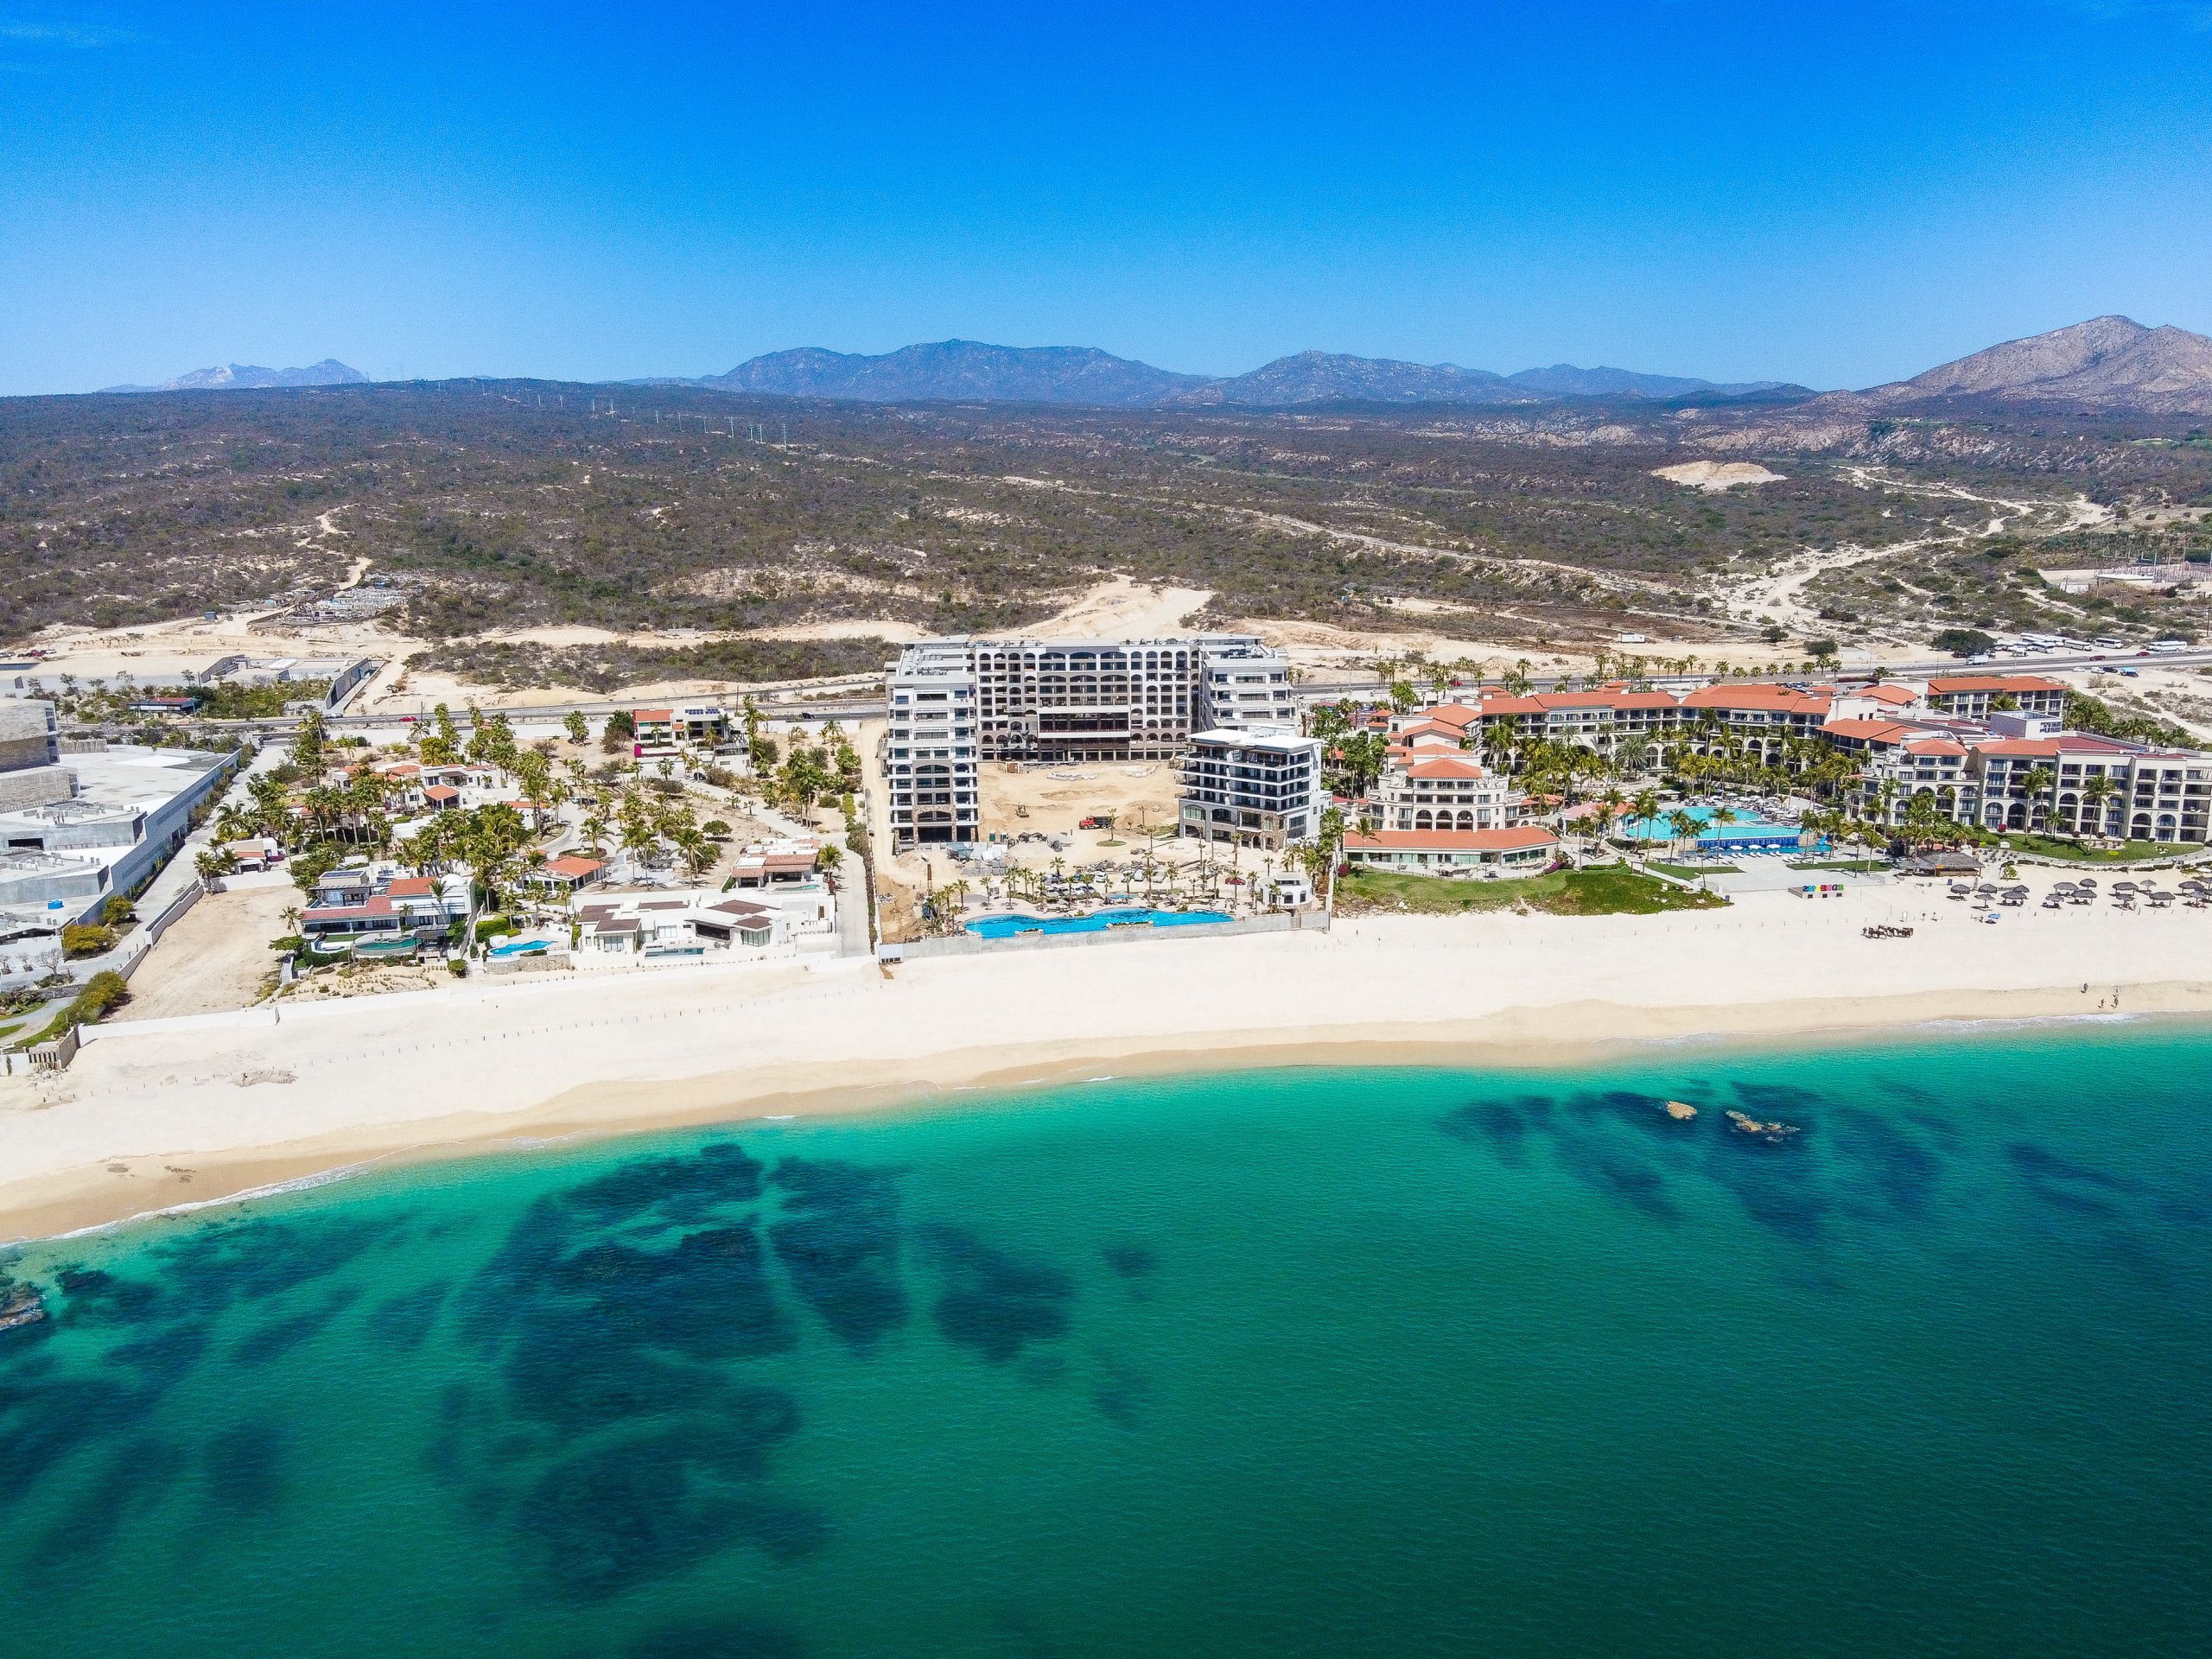 Villa La Valencia – Our New Resort in Los Cabos That Should Be On Your Radar